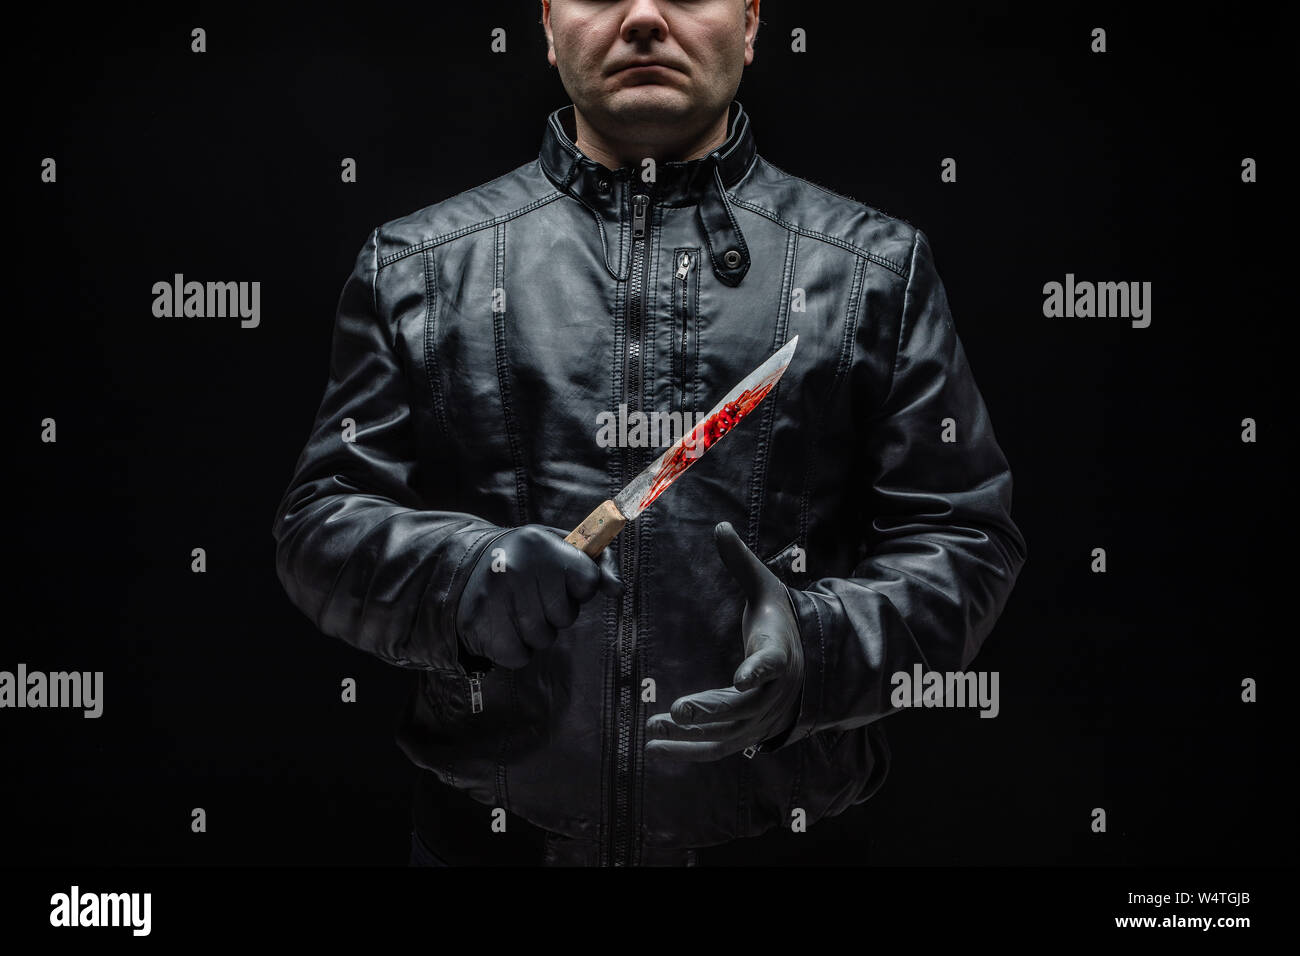 Le tueur en série maniac avec couteau et gants noirs / outils de tueur Banque D'Images